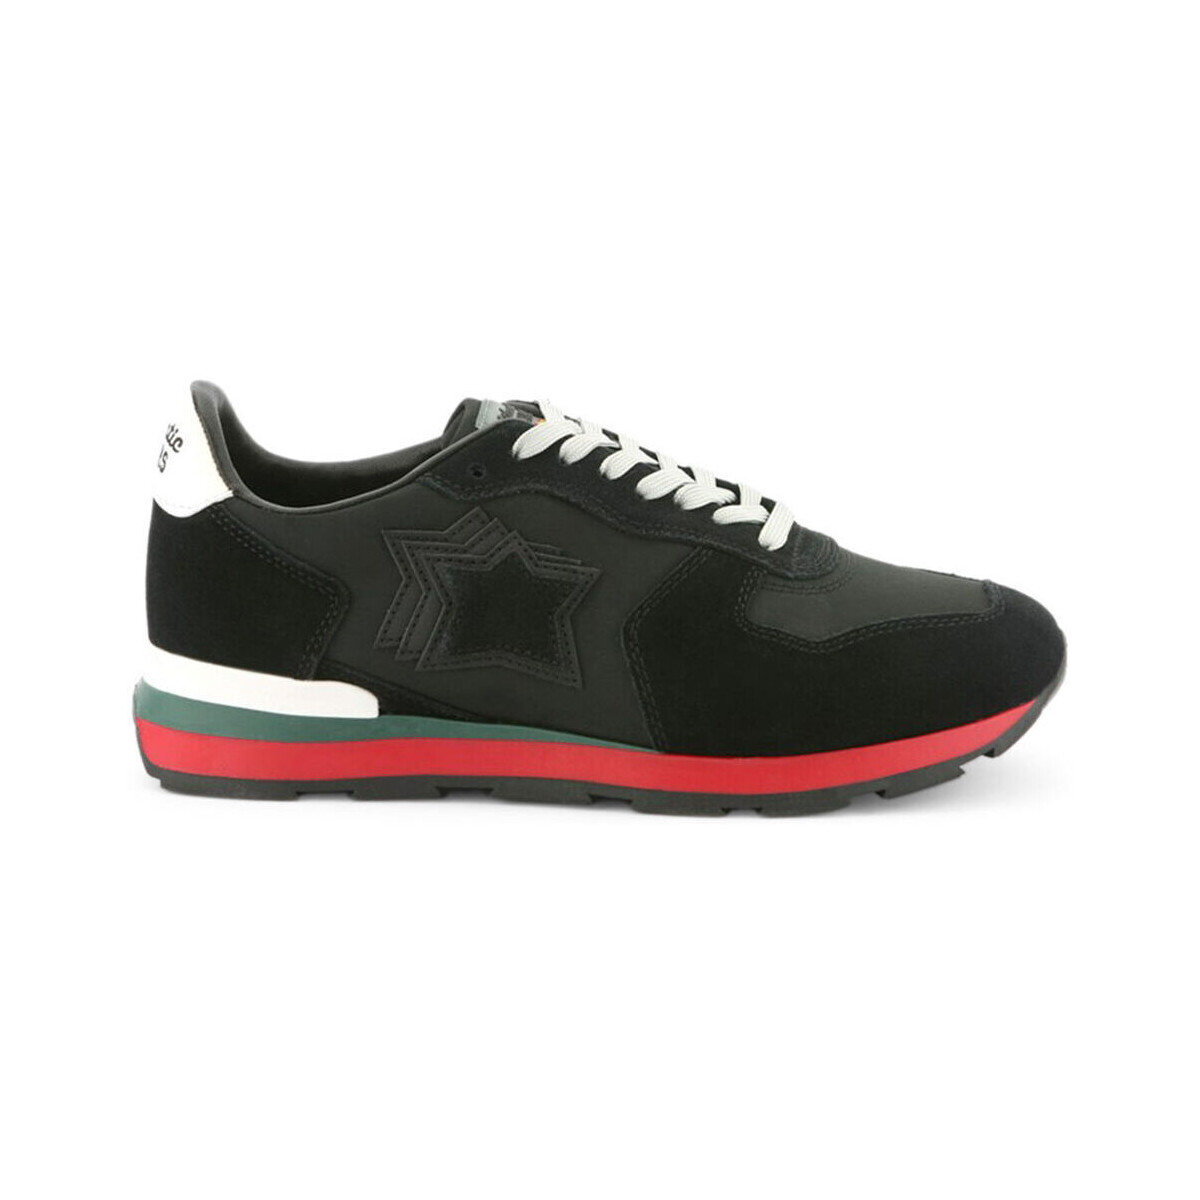 Schoenen Heren Sneakers Atlantic Stars antevoc-bnww-bt128 black Zwart